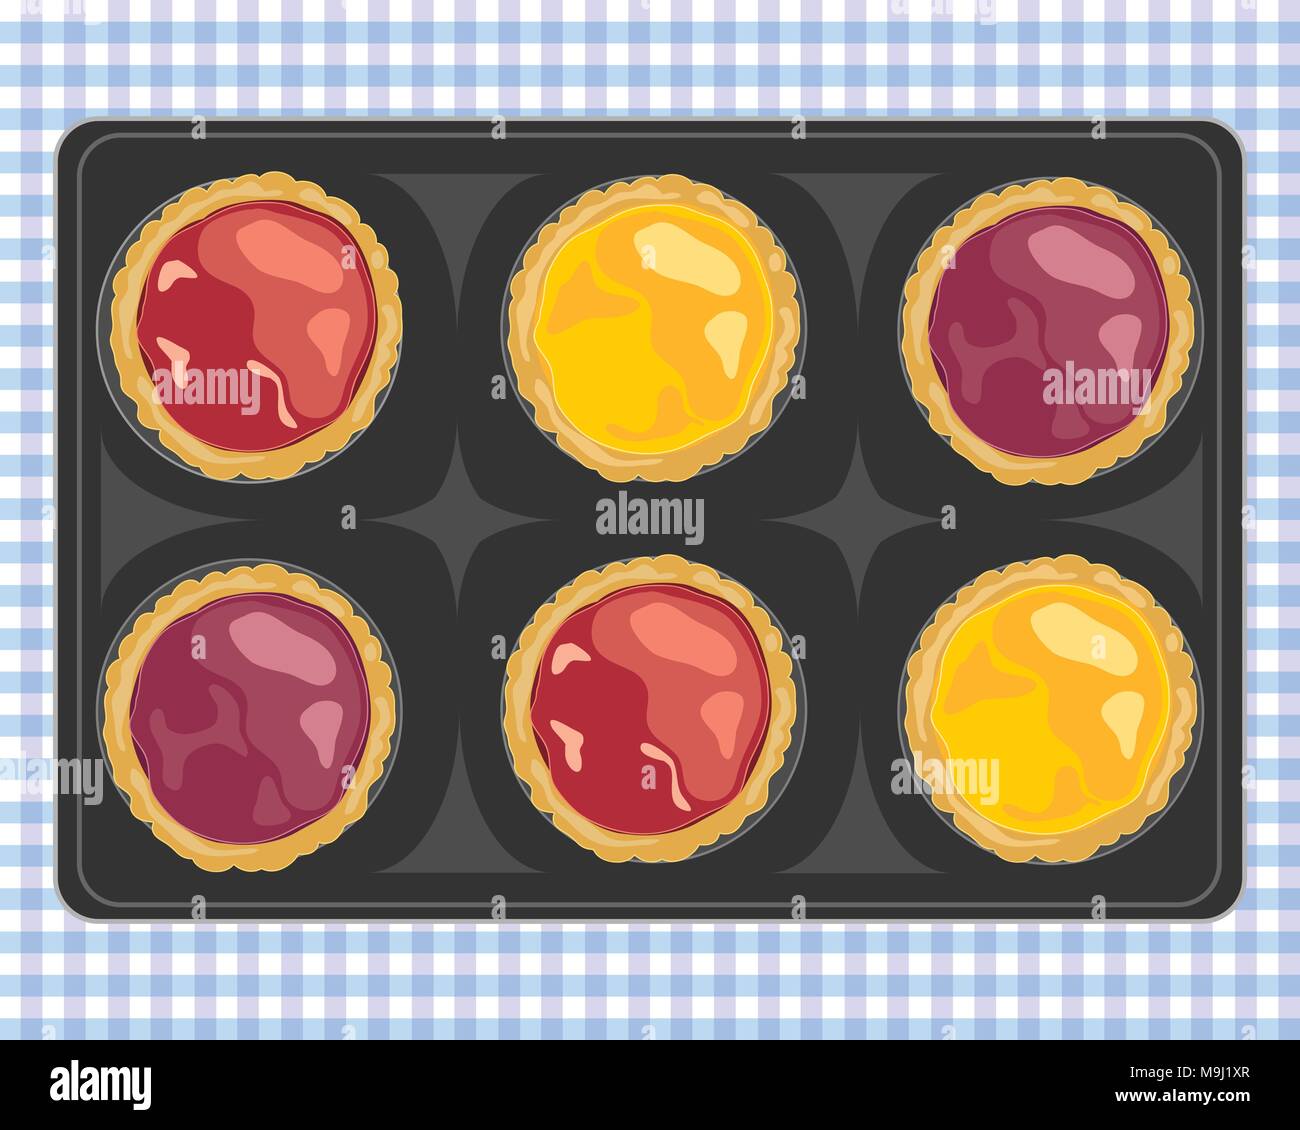 Un vecteur illustration en format eps 8 d'une barquette de fraise fraîchement sorti de prune et de tartes à la confiture de citron sur un tissu vichy bleu Illustration de Vecteur